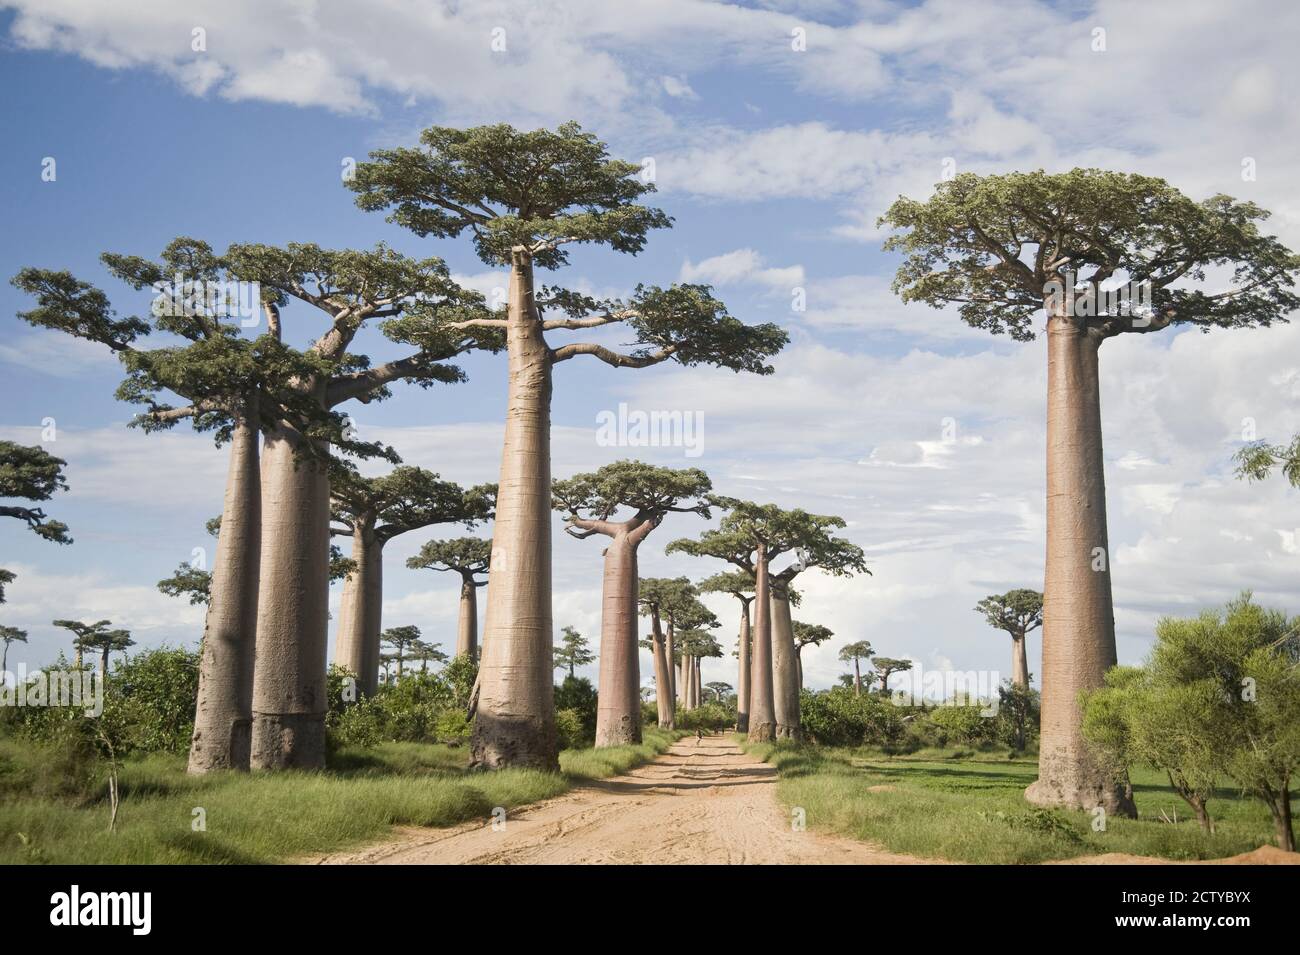 Árboles de baobab (Adansonia digitata) a lo largo de un camino de tierra, Avenida de los baobabs, Morondava, Madagascar Foto de stock